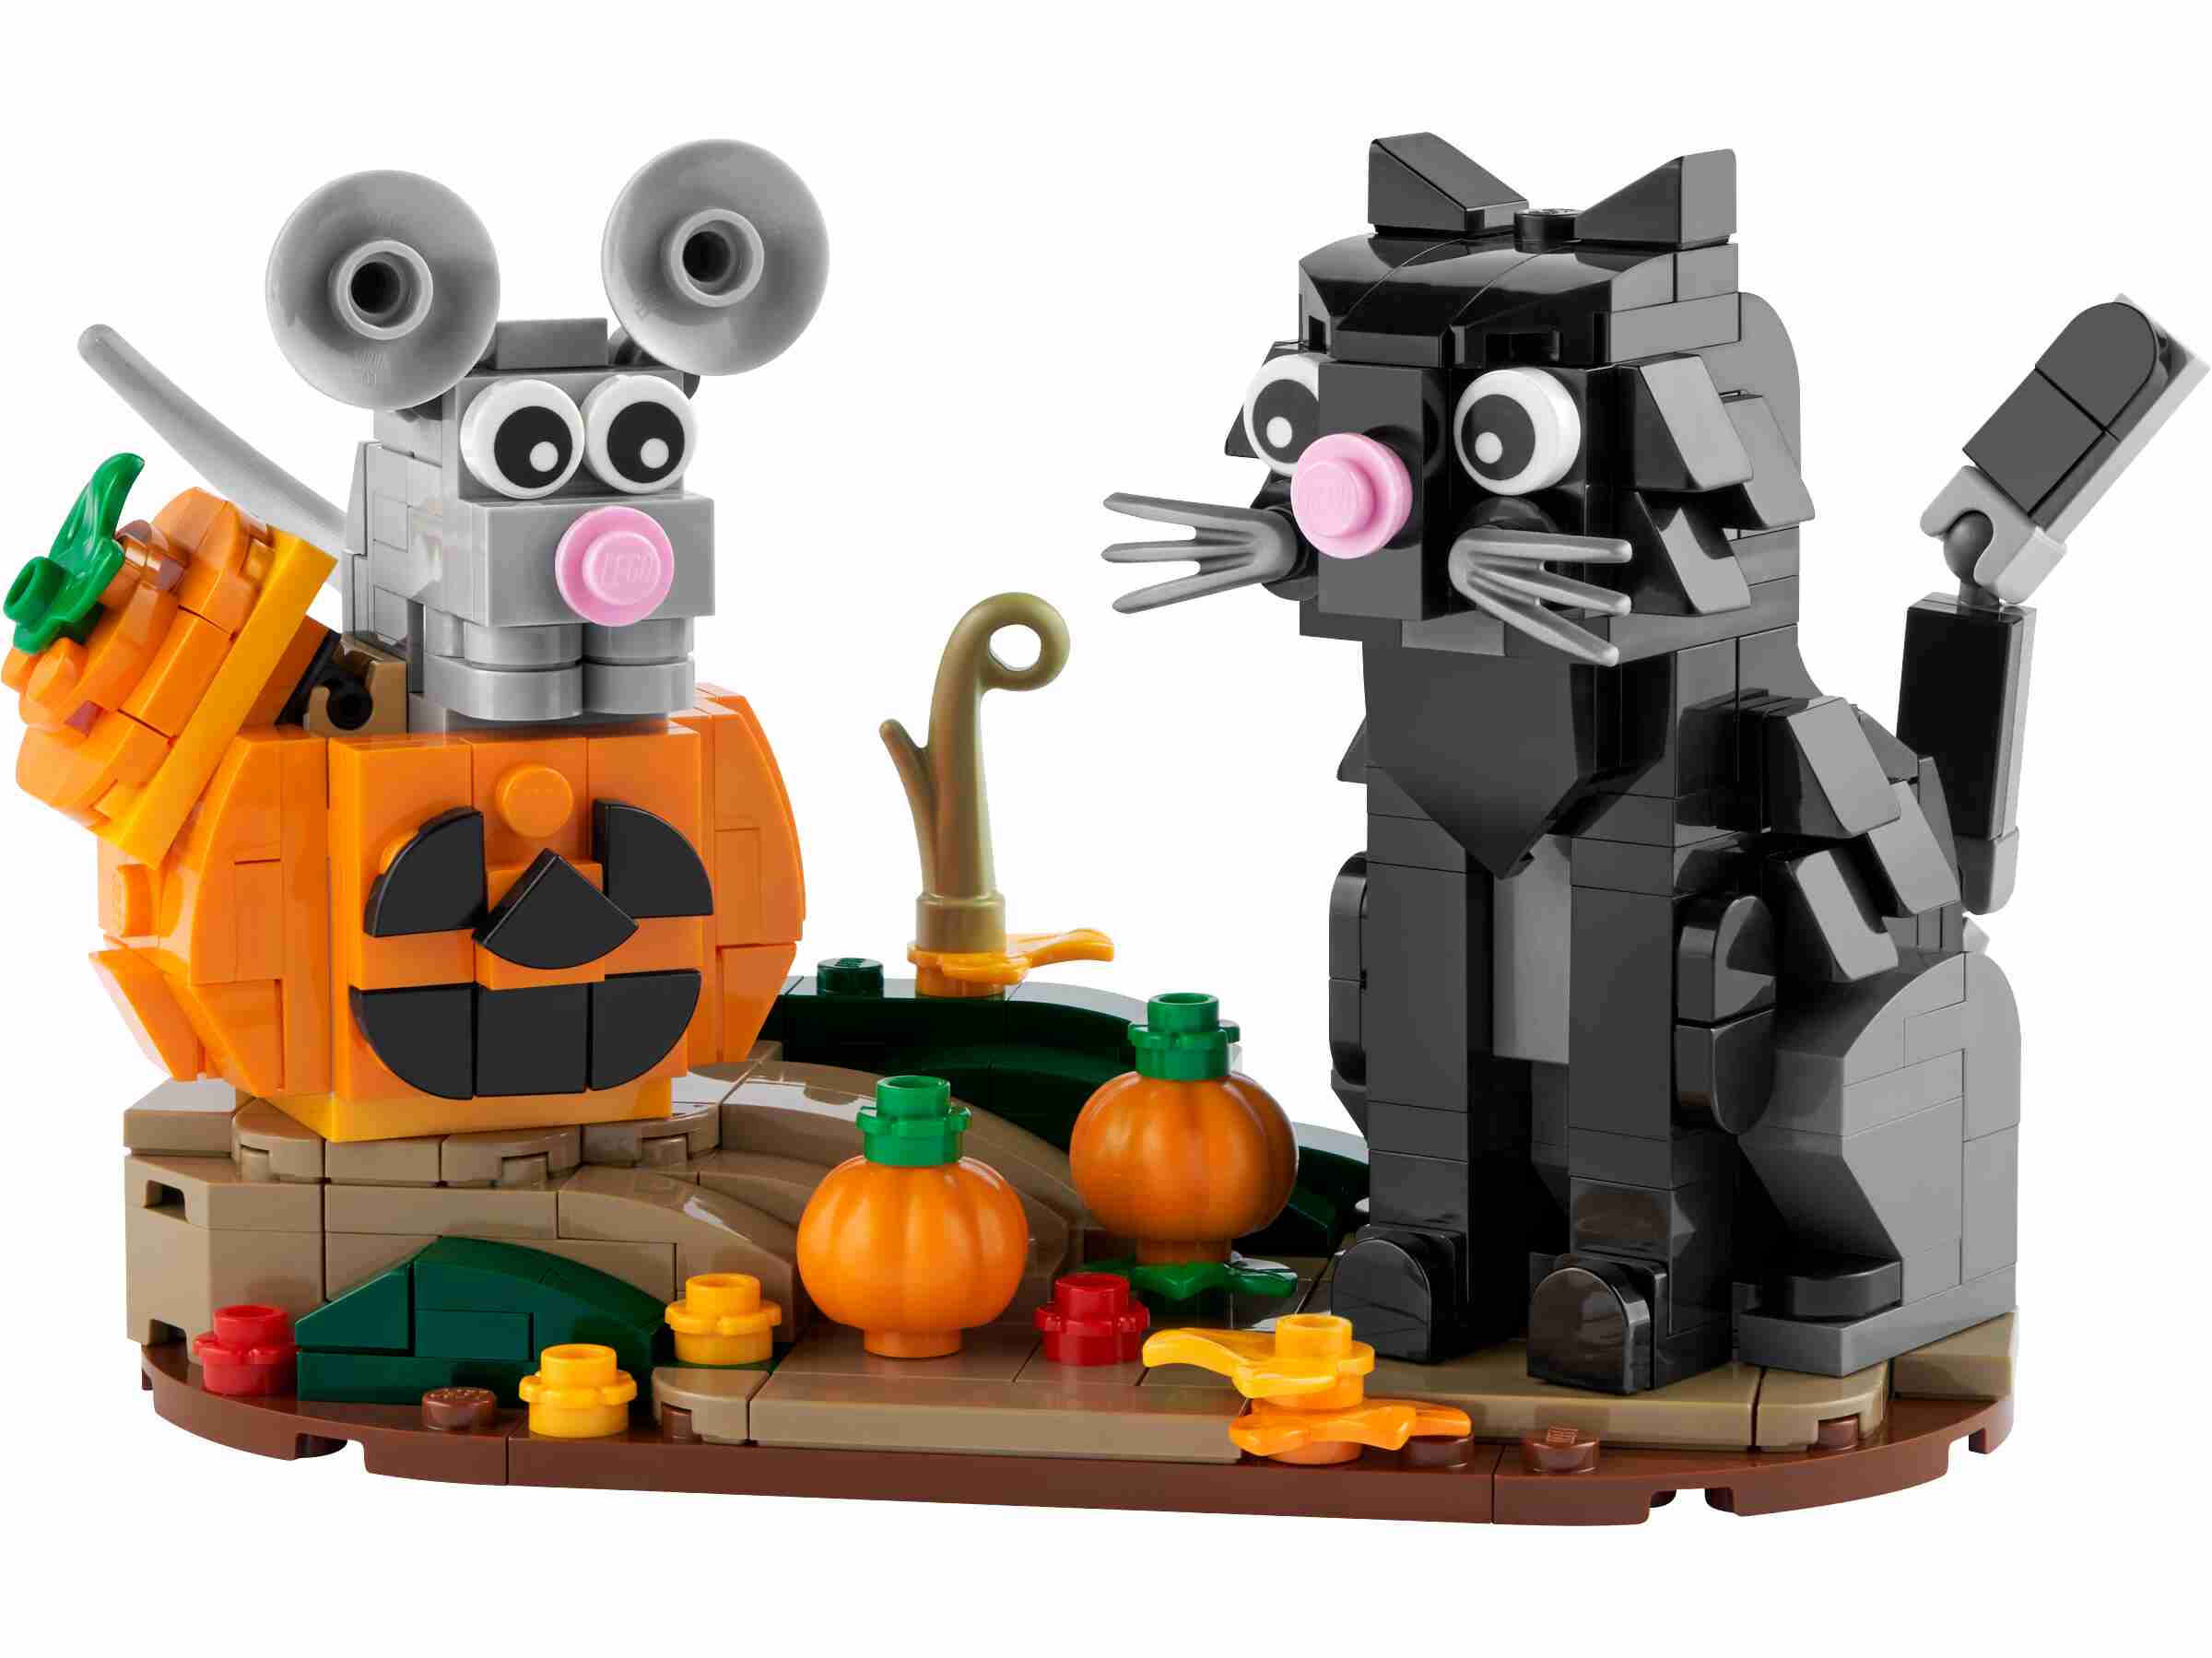 LEGO 40570 Iconic Katz und Maus an Halloween, drehbare Grundplatte